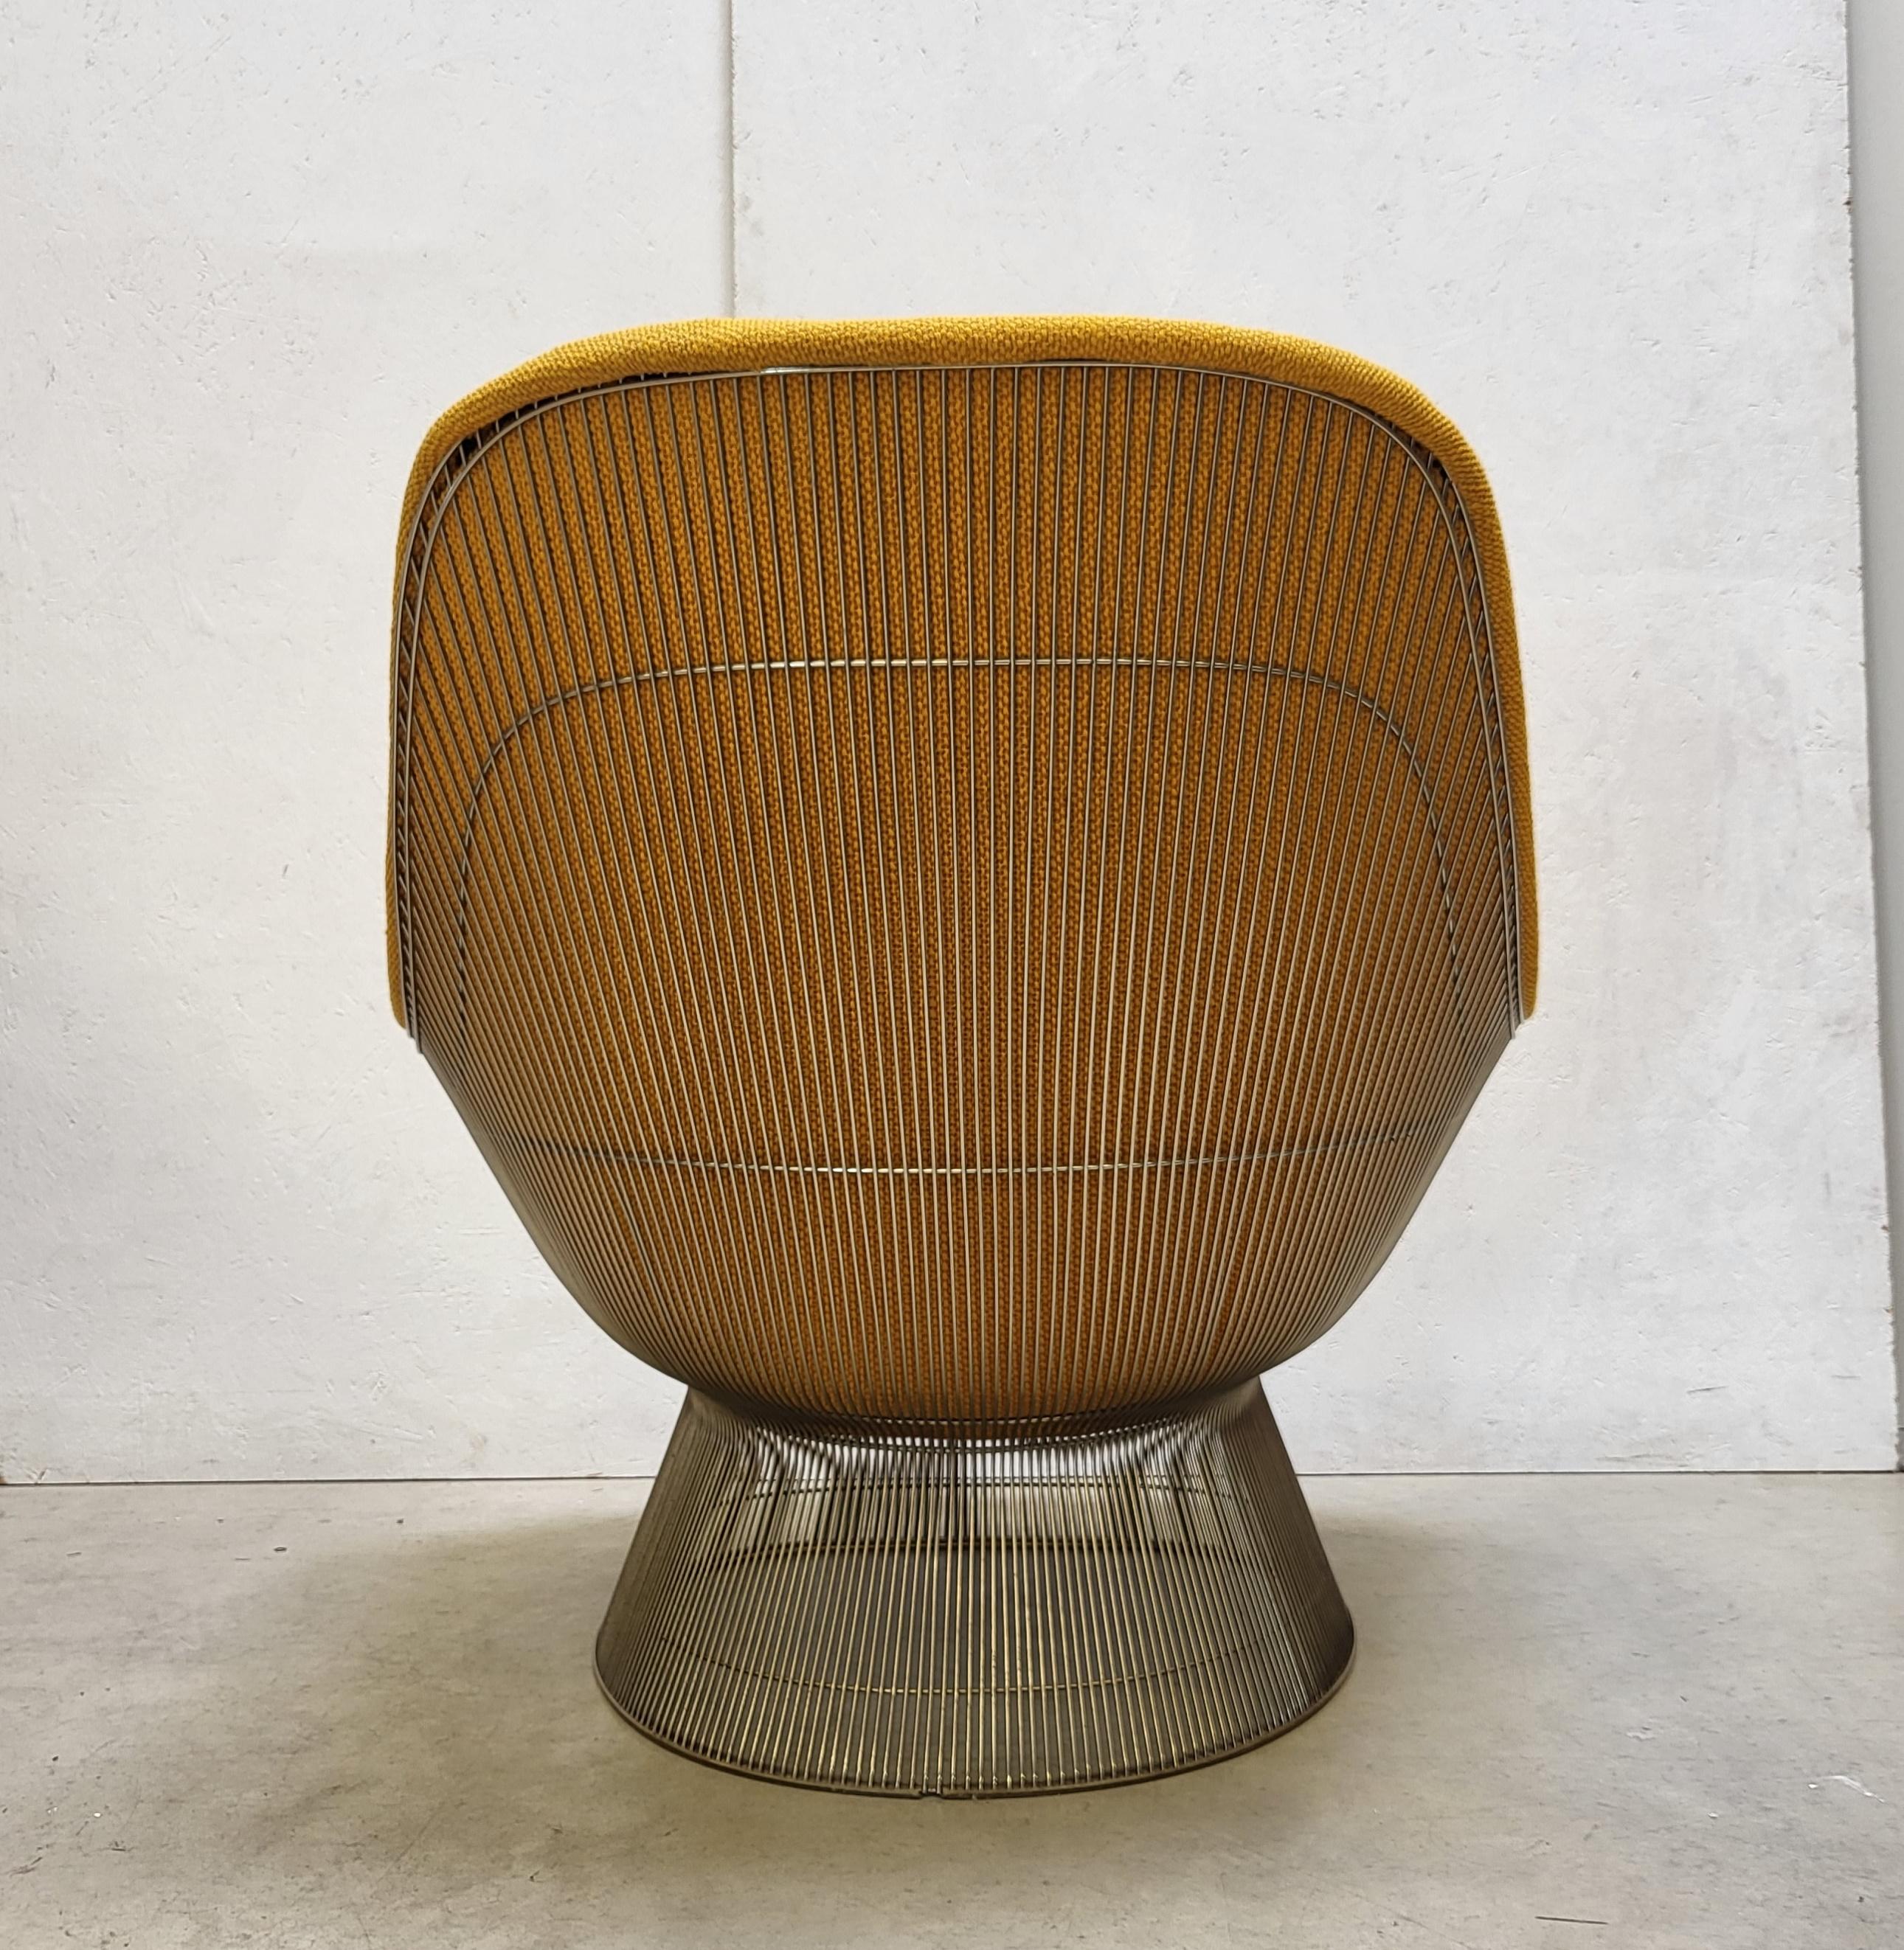 Aluminum Mustard Warren Platner Easy Lounge Chair for Knoll, 1980s